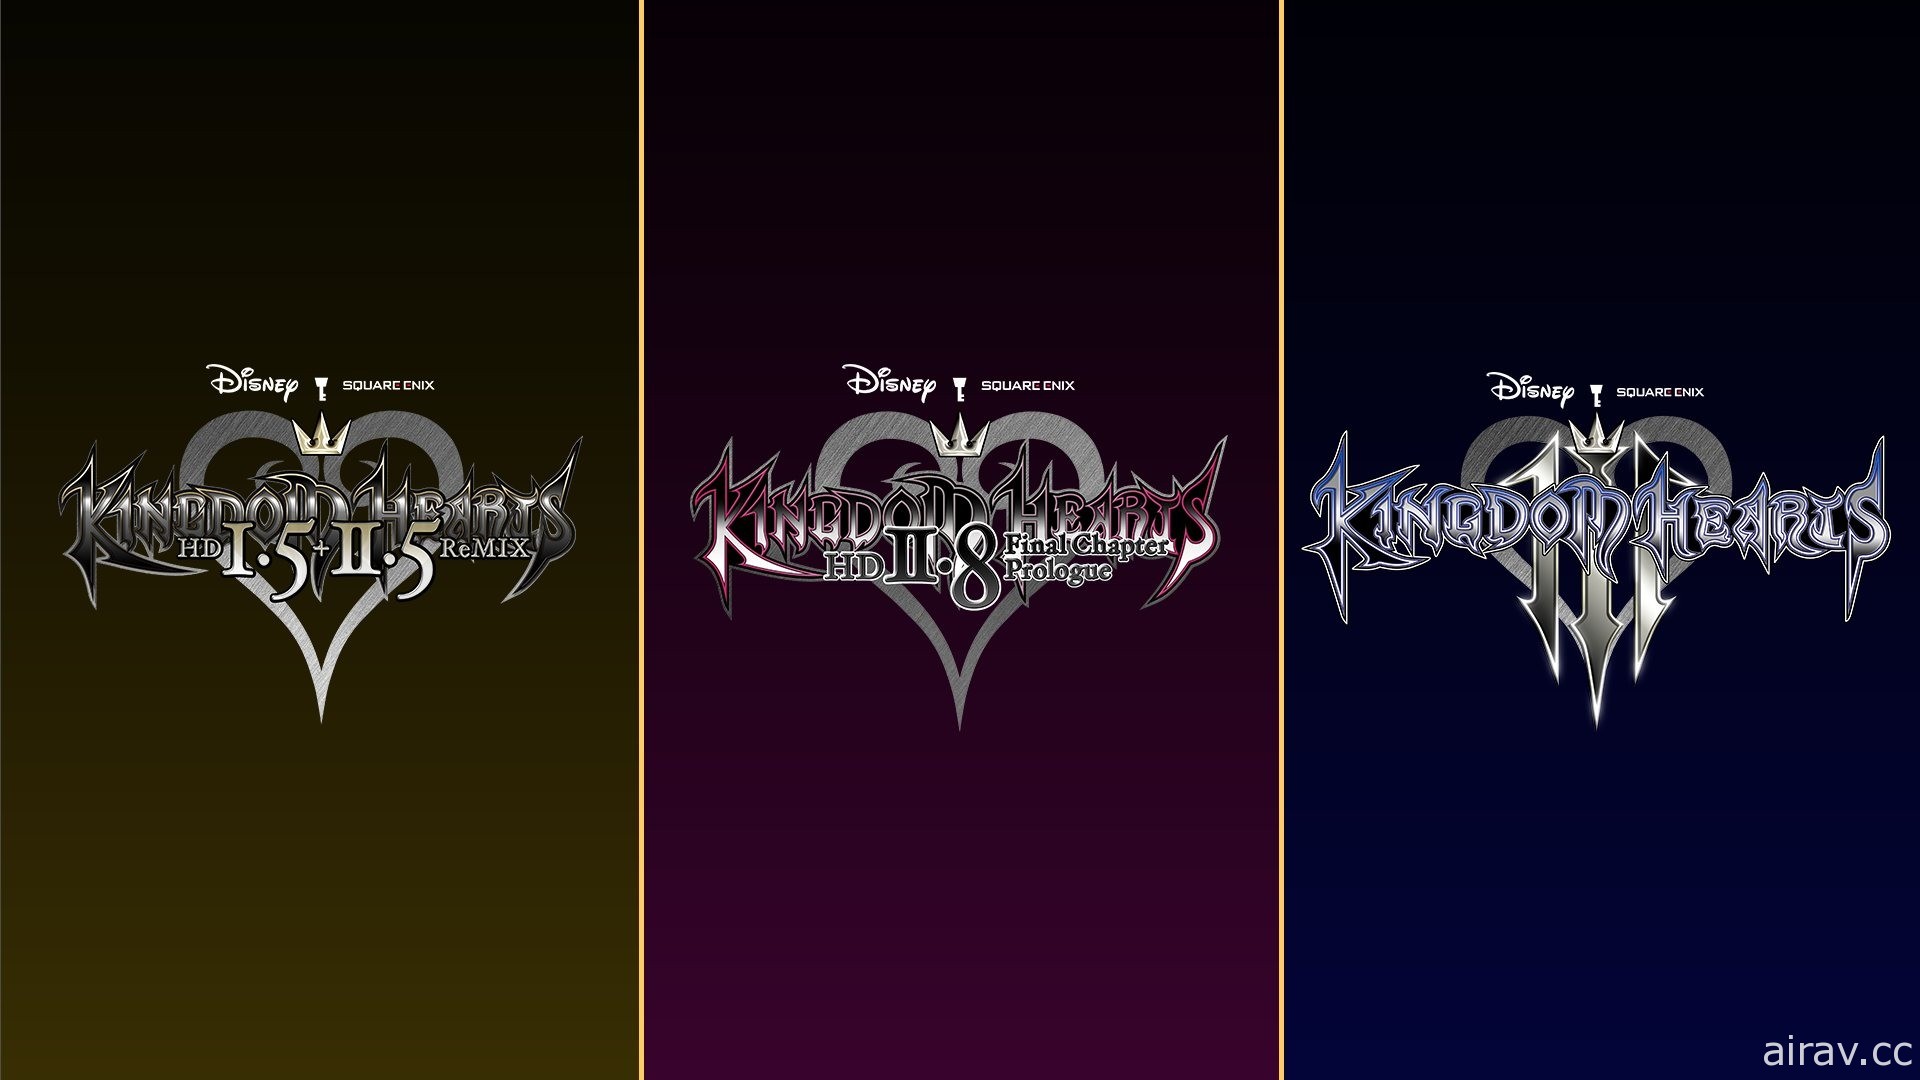 《王国之心》系列 3 款作品《1.5 + 2.5》《2.8》《3》云端版确定登陆 Switch 平台